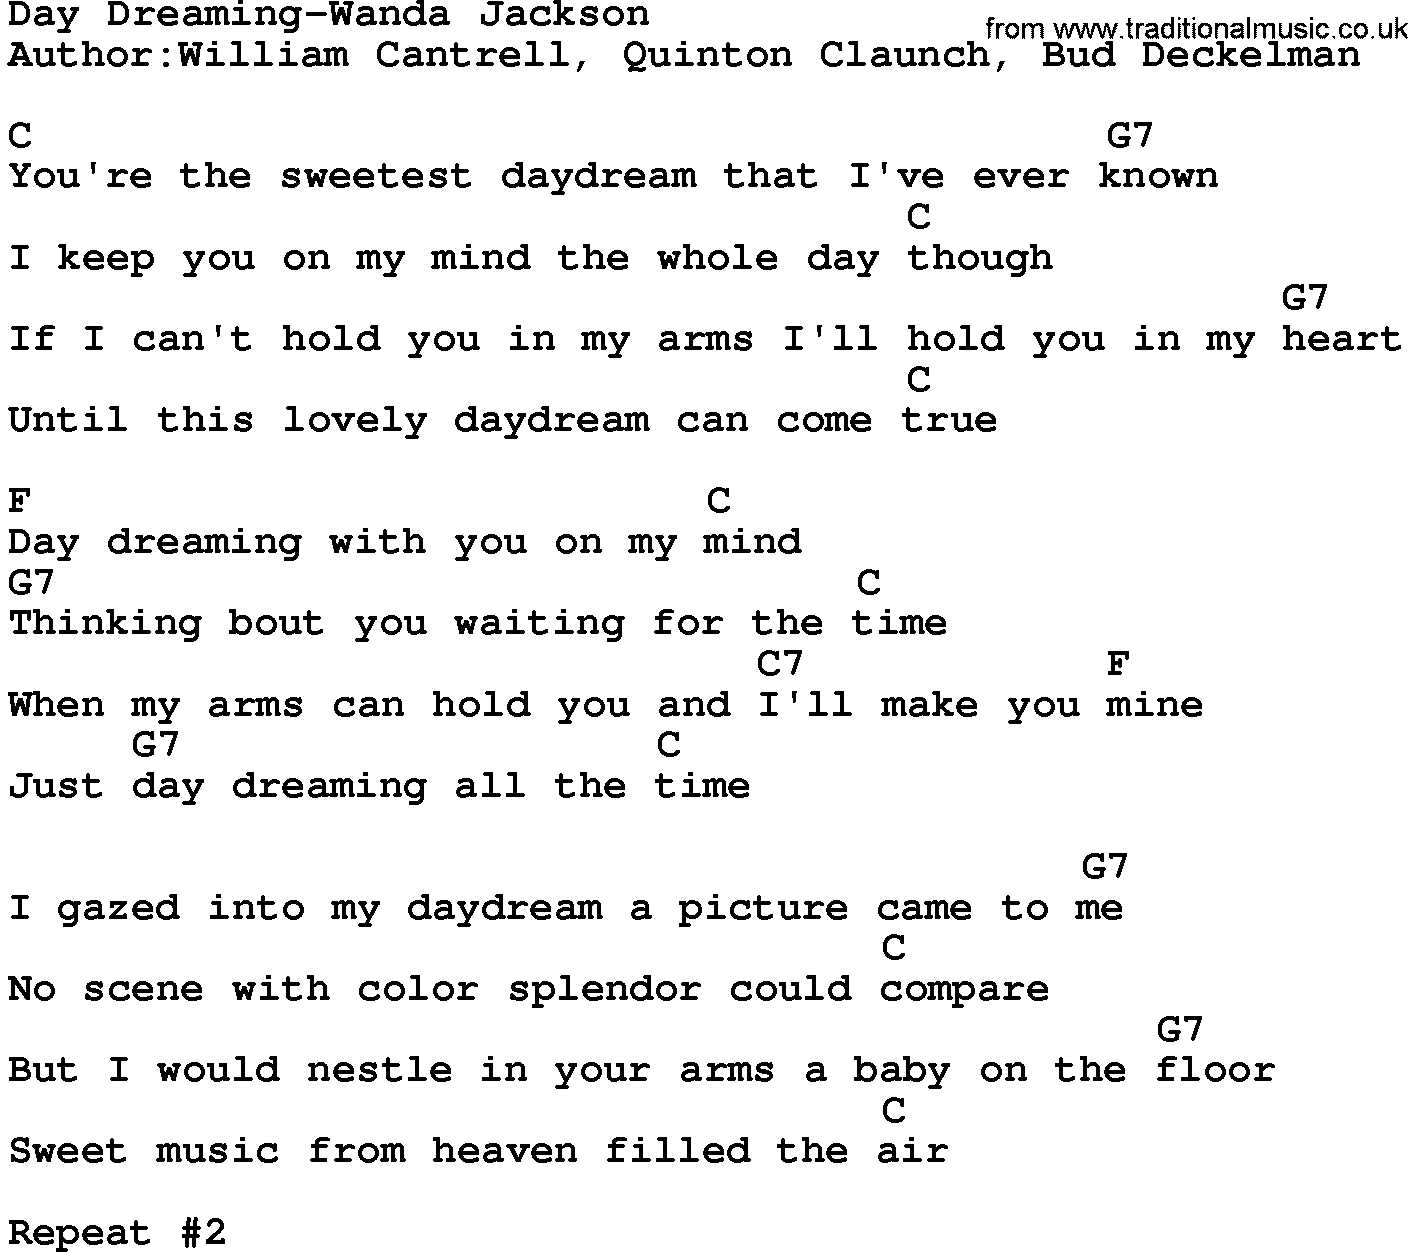 Country music song: Day Dreaming-Wanda Jackson lyrics and chords